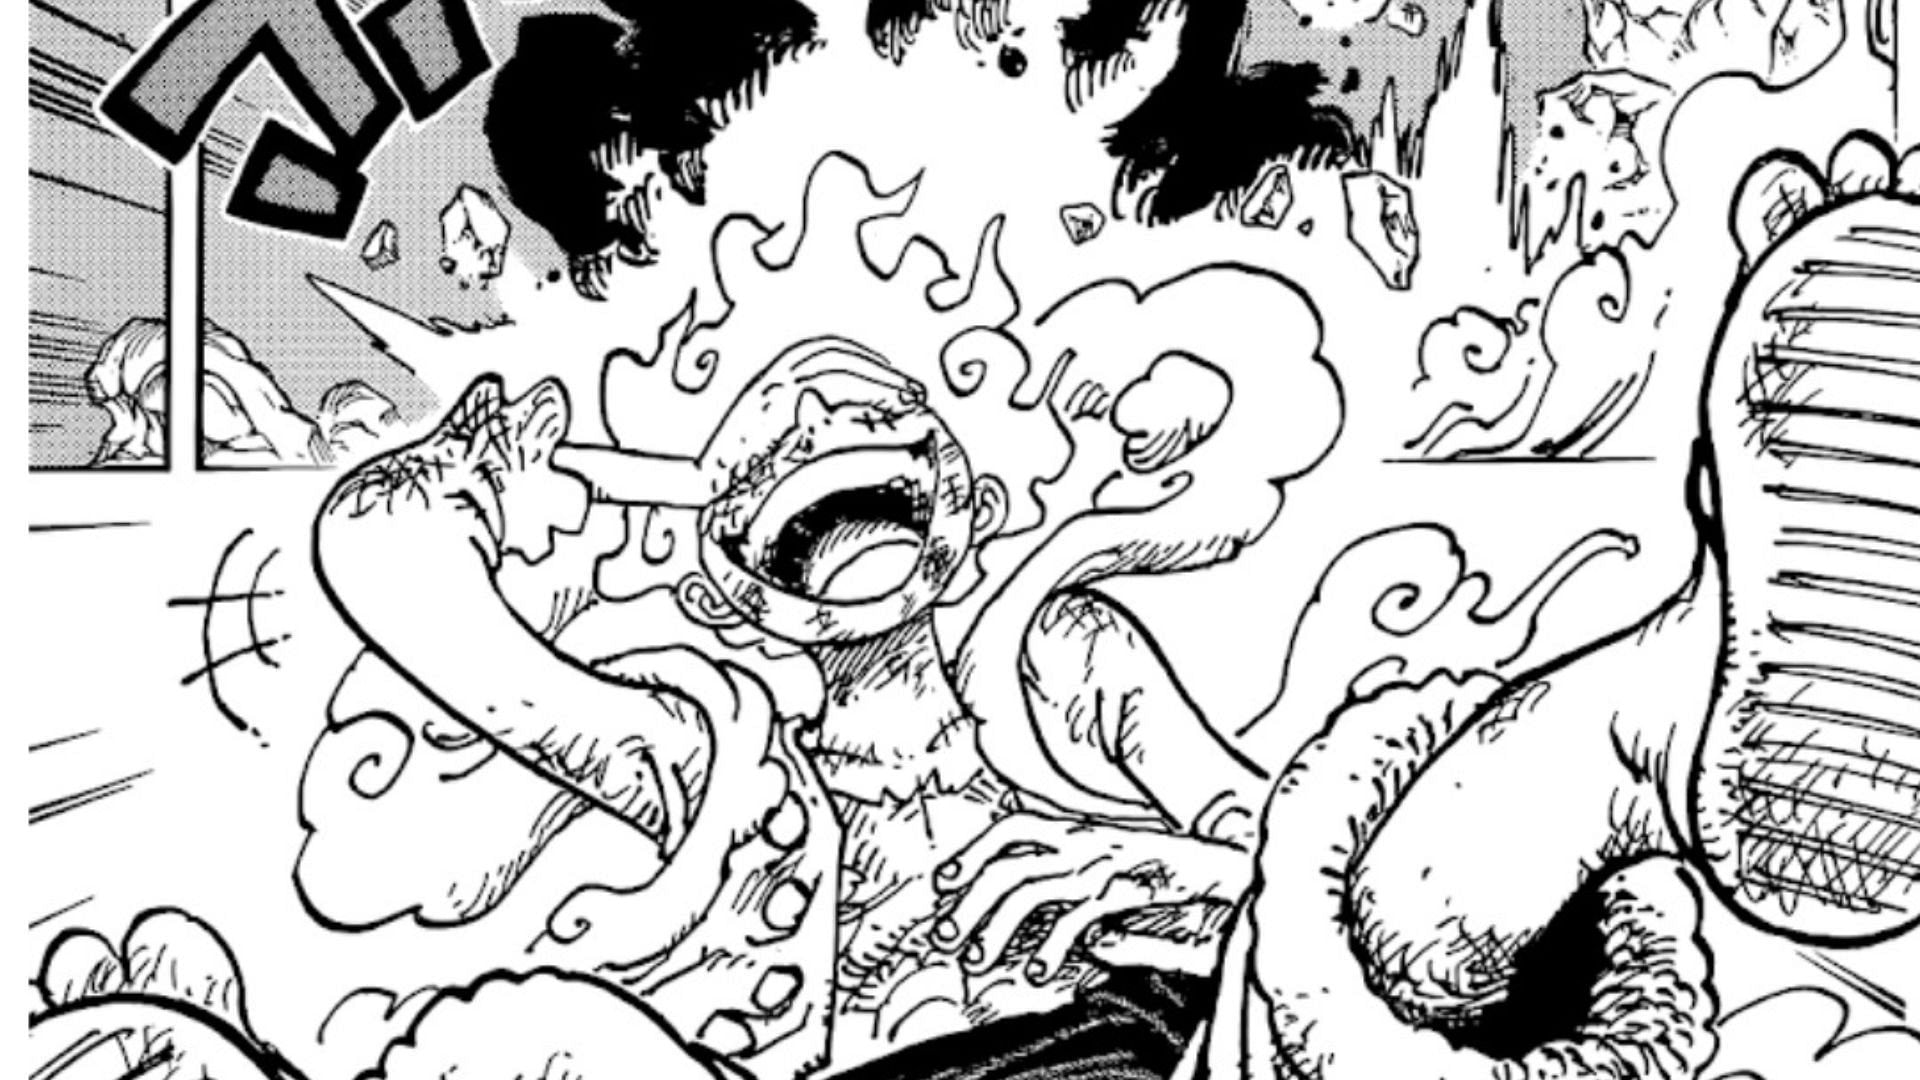 One Piece manga panel  One piece manga, Luffy gear 5, One piece gear 5